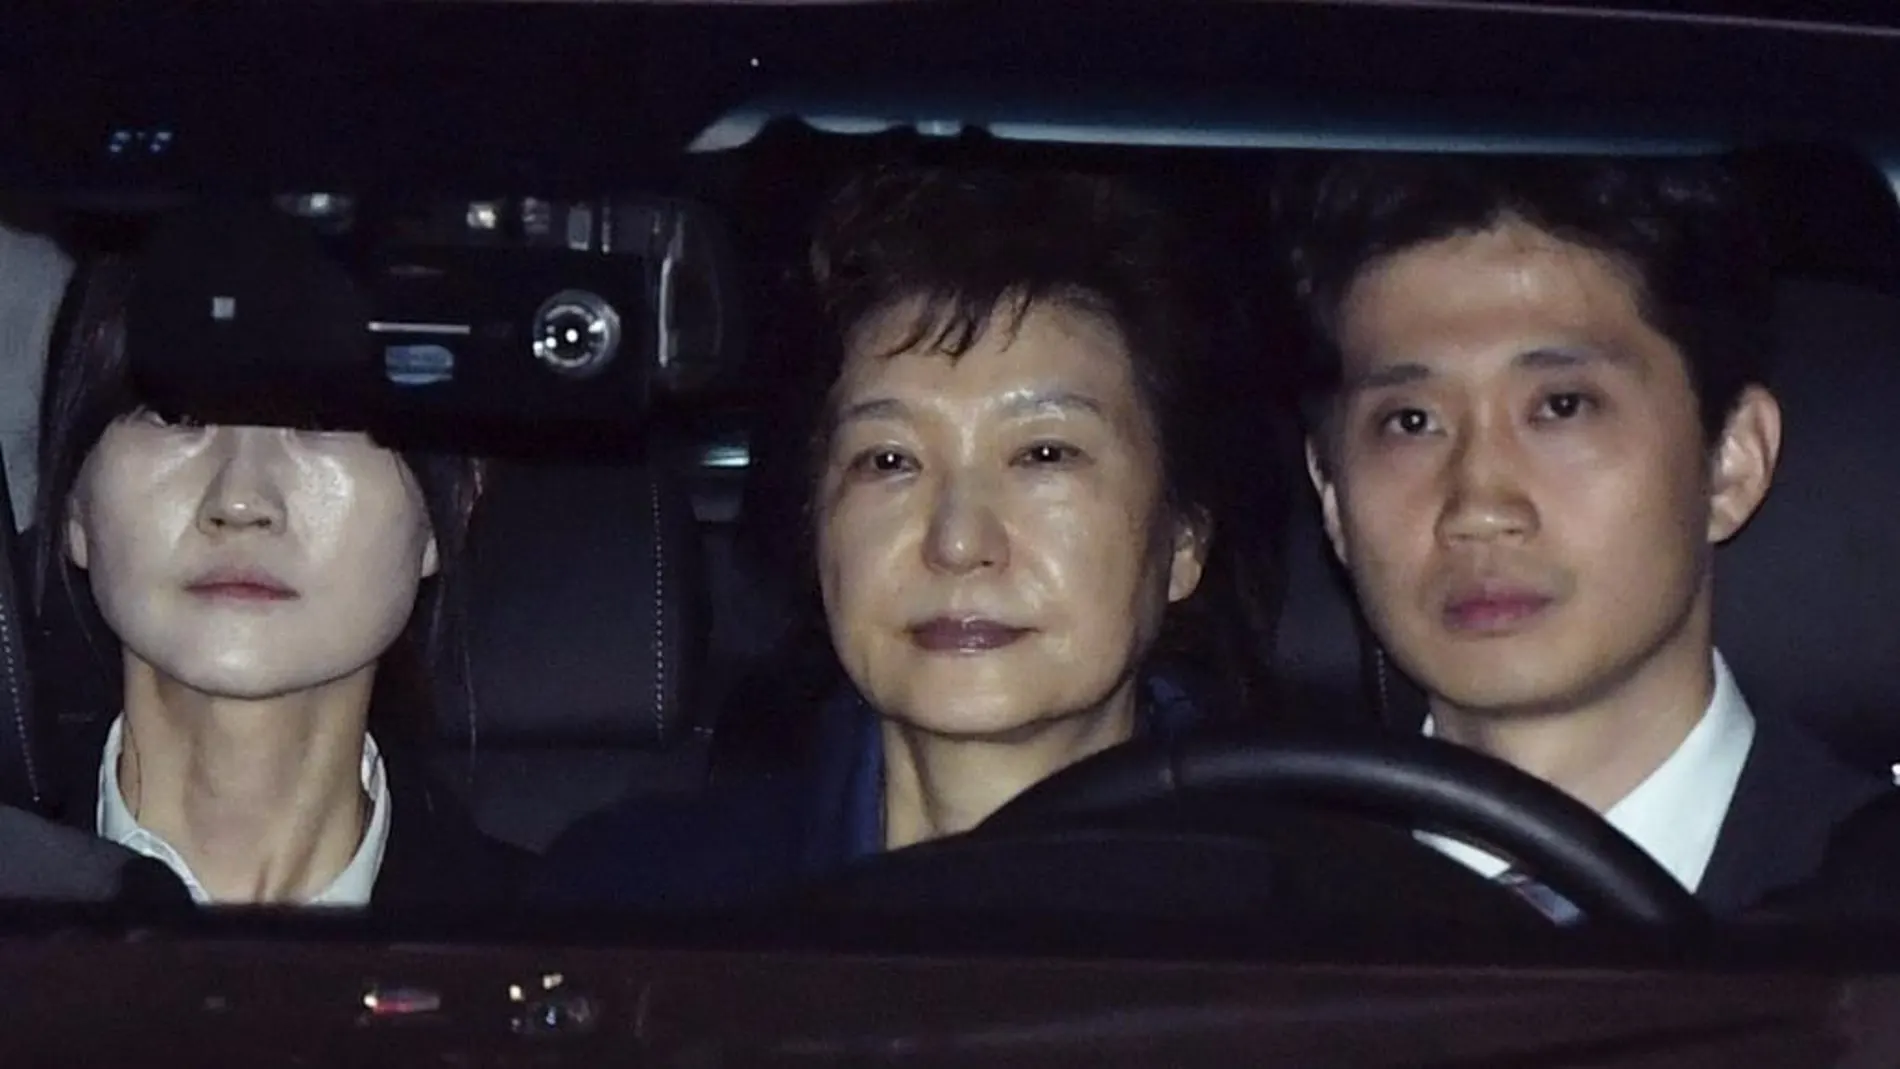 La expresidenta surcoreana Park Geun-hye (en el centro), llega al centro de detención anoche